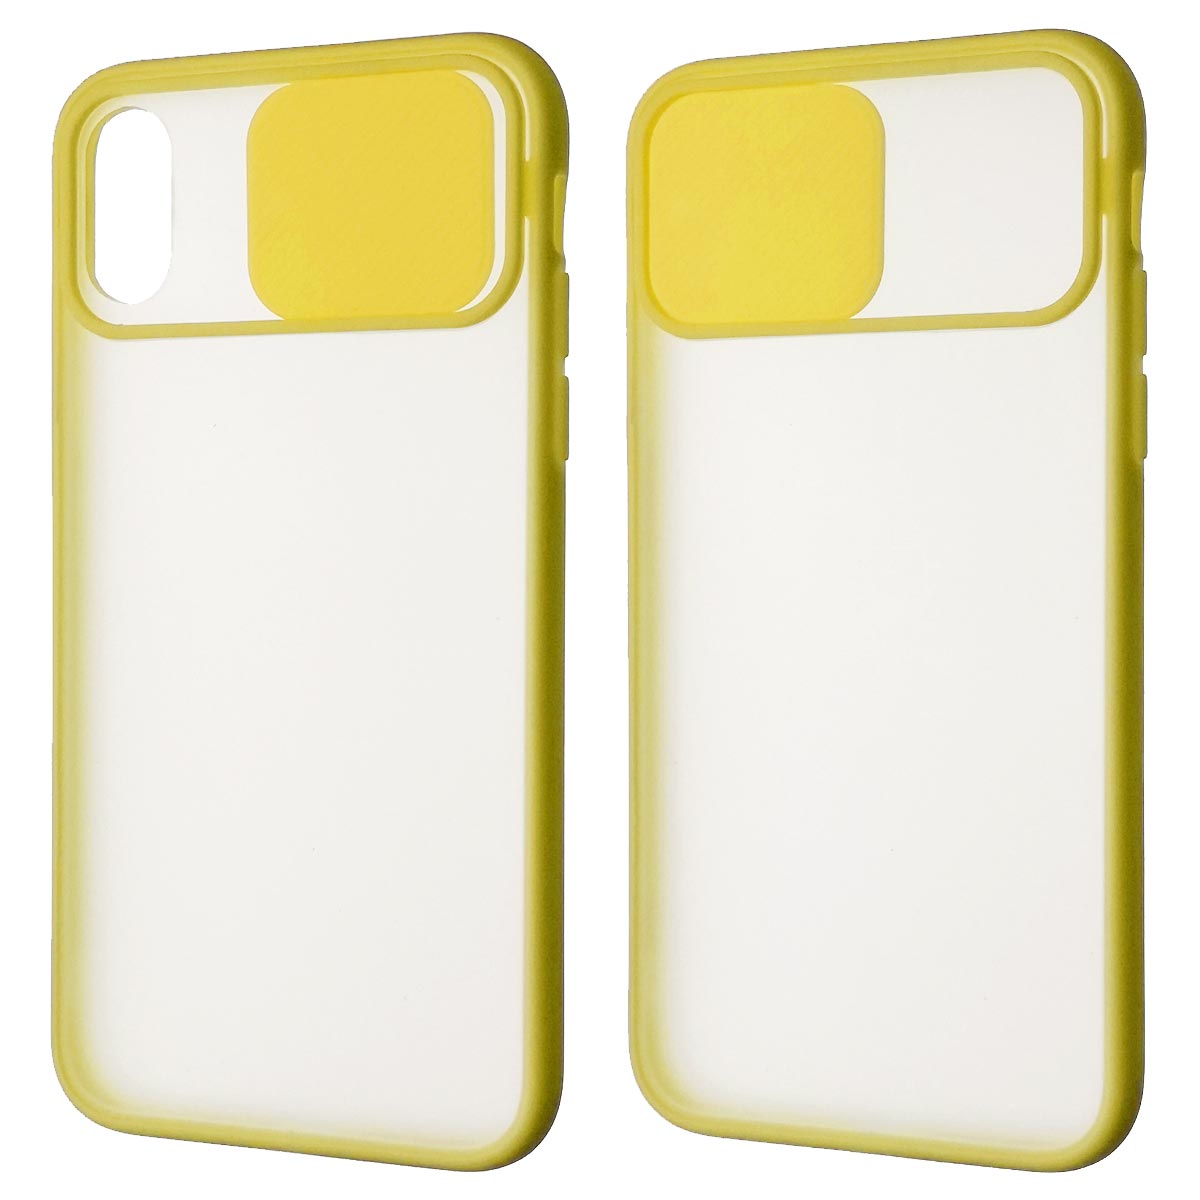 Чехол накладка для APPLE iPhone X, iPhone XS, силикон, пластик, матовый, со шторкой для защиты задней камеры, цвет окантовки желтый